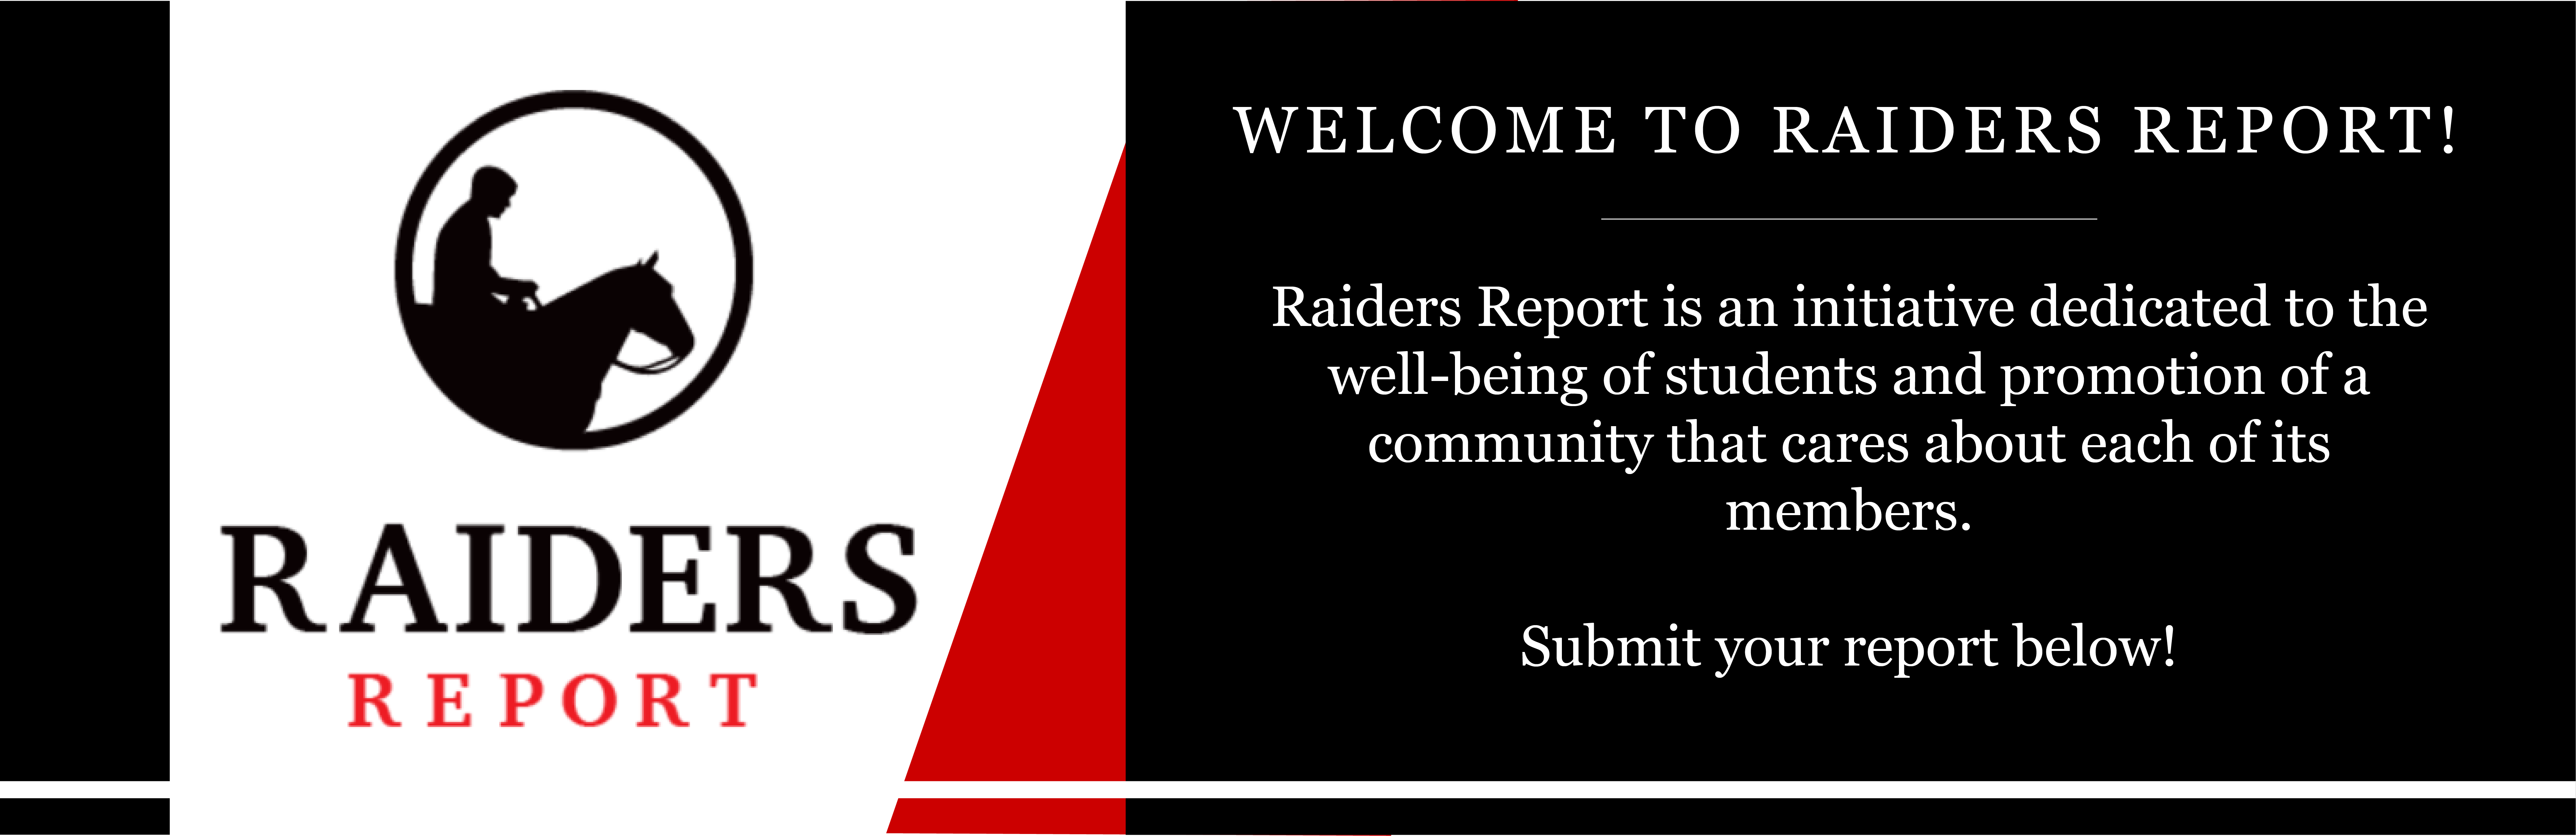 raiders email